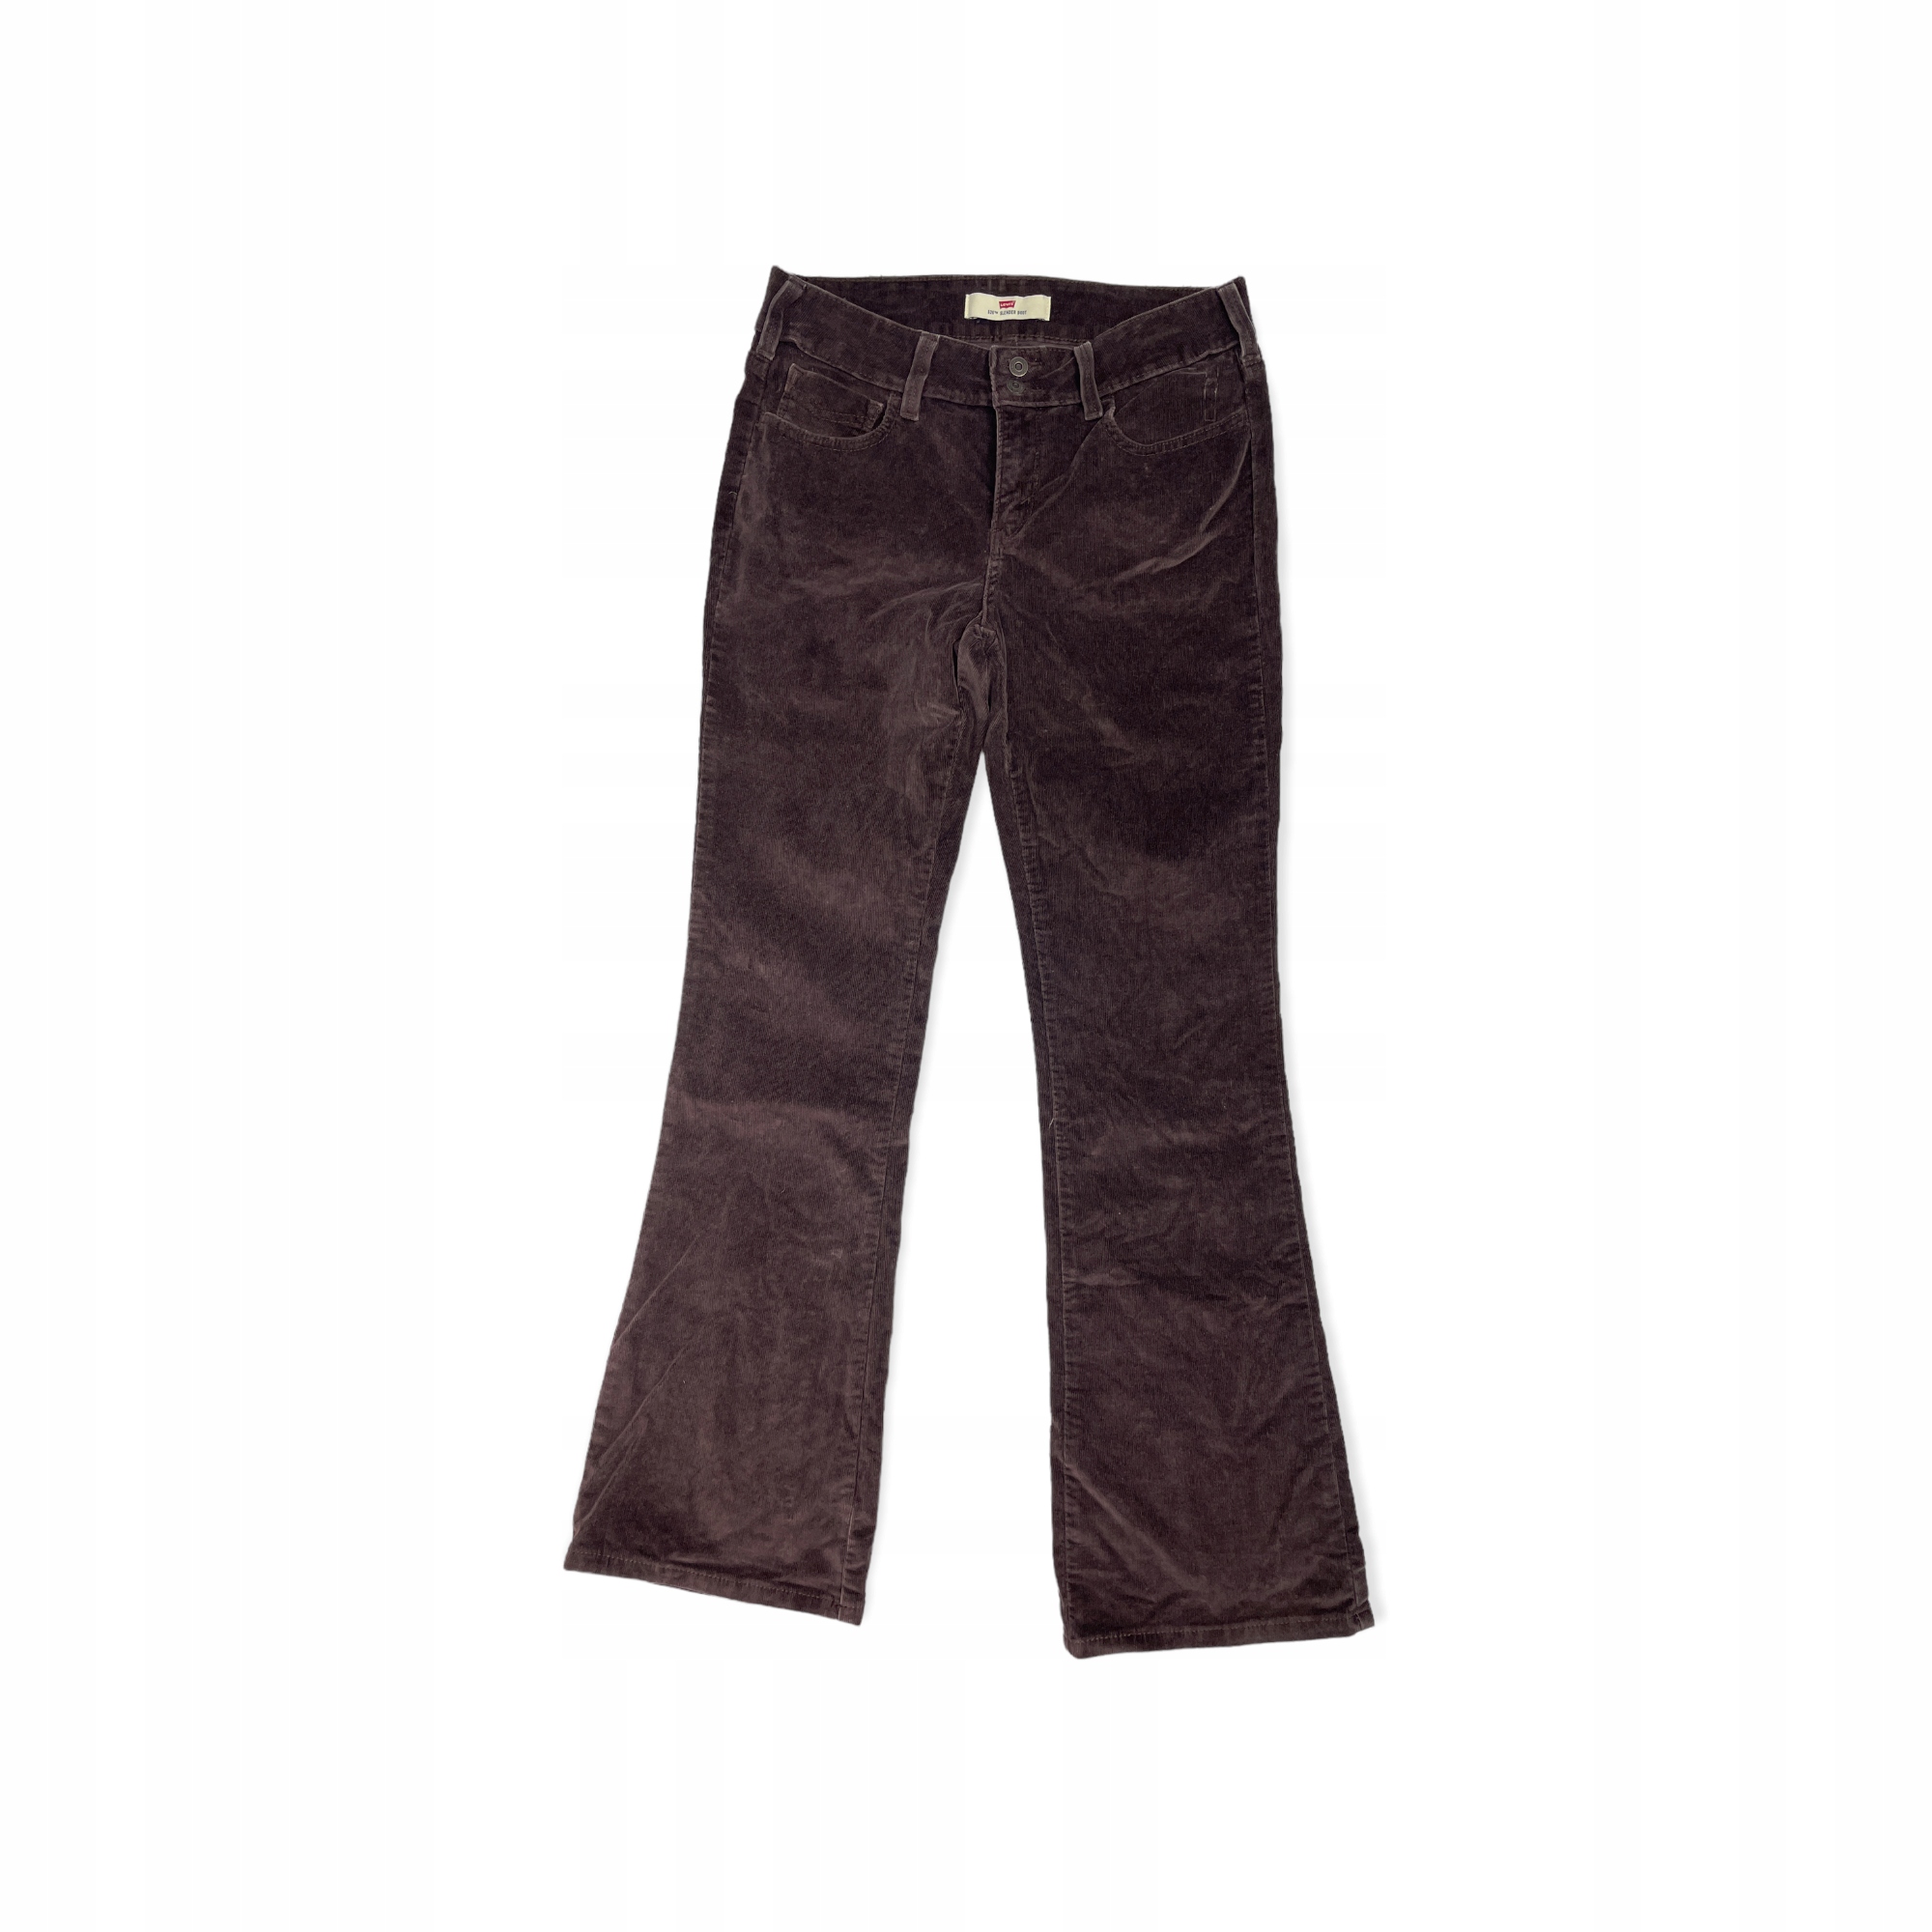 Spodnie jeansowe damskie LEVI'S 526 SLENDER BOOT M 12548075618 